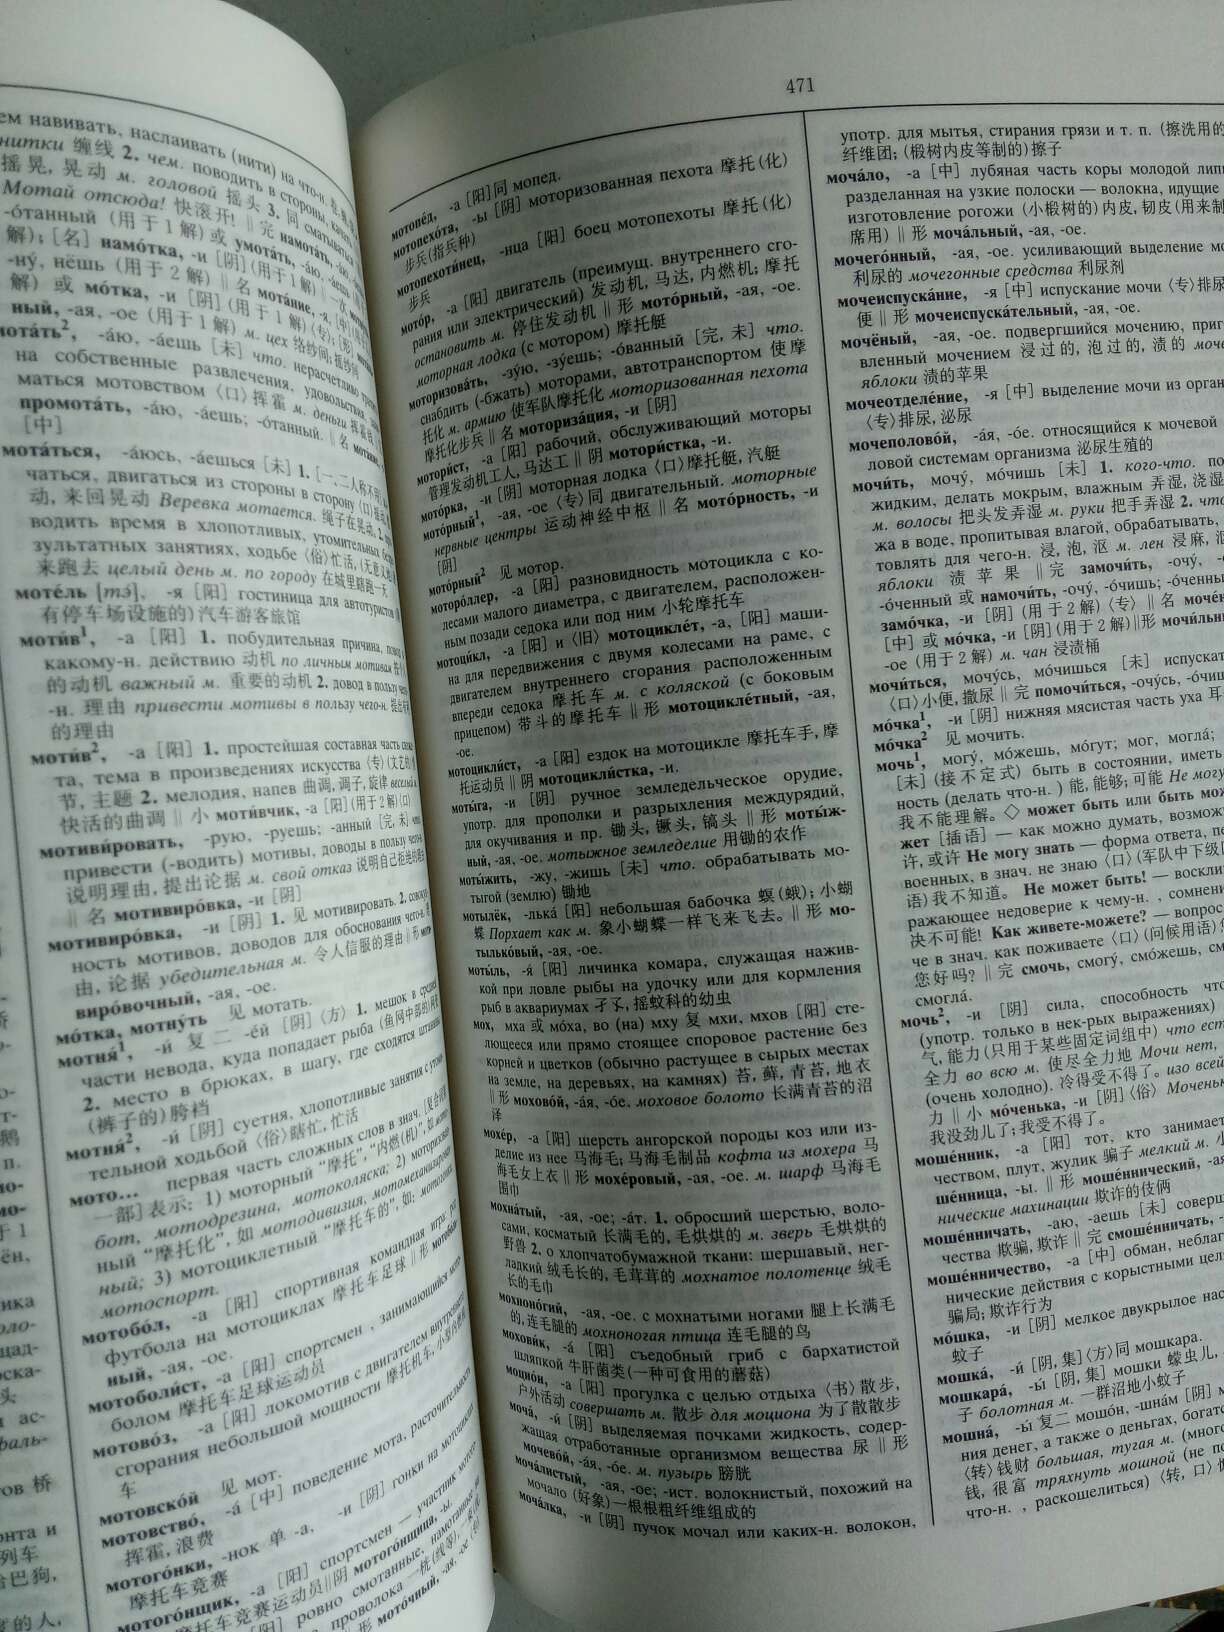 挺不错的，这一款词典是我们俄语专业用的最多最广泛的词典了，的书寄来时都是非常新的